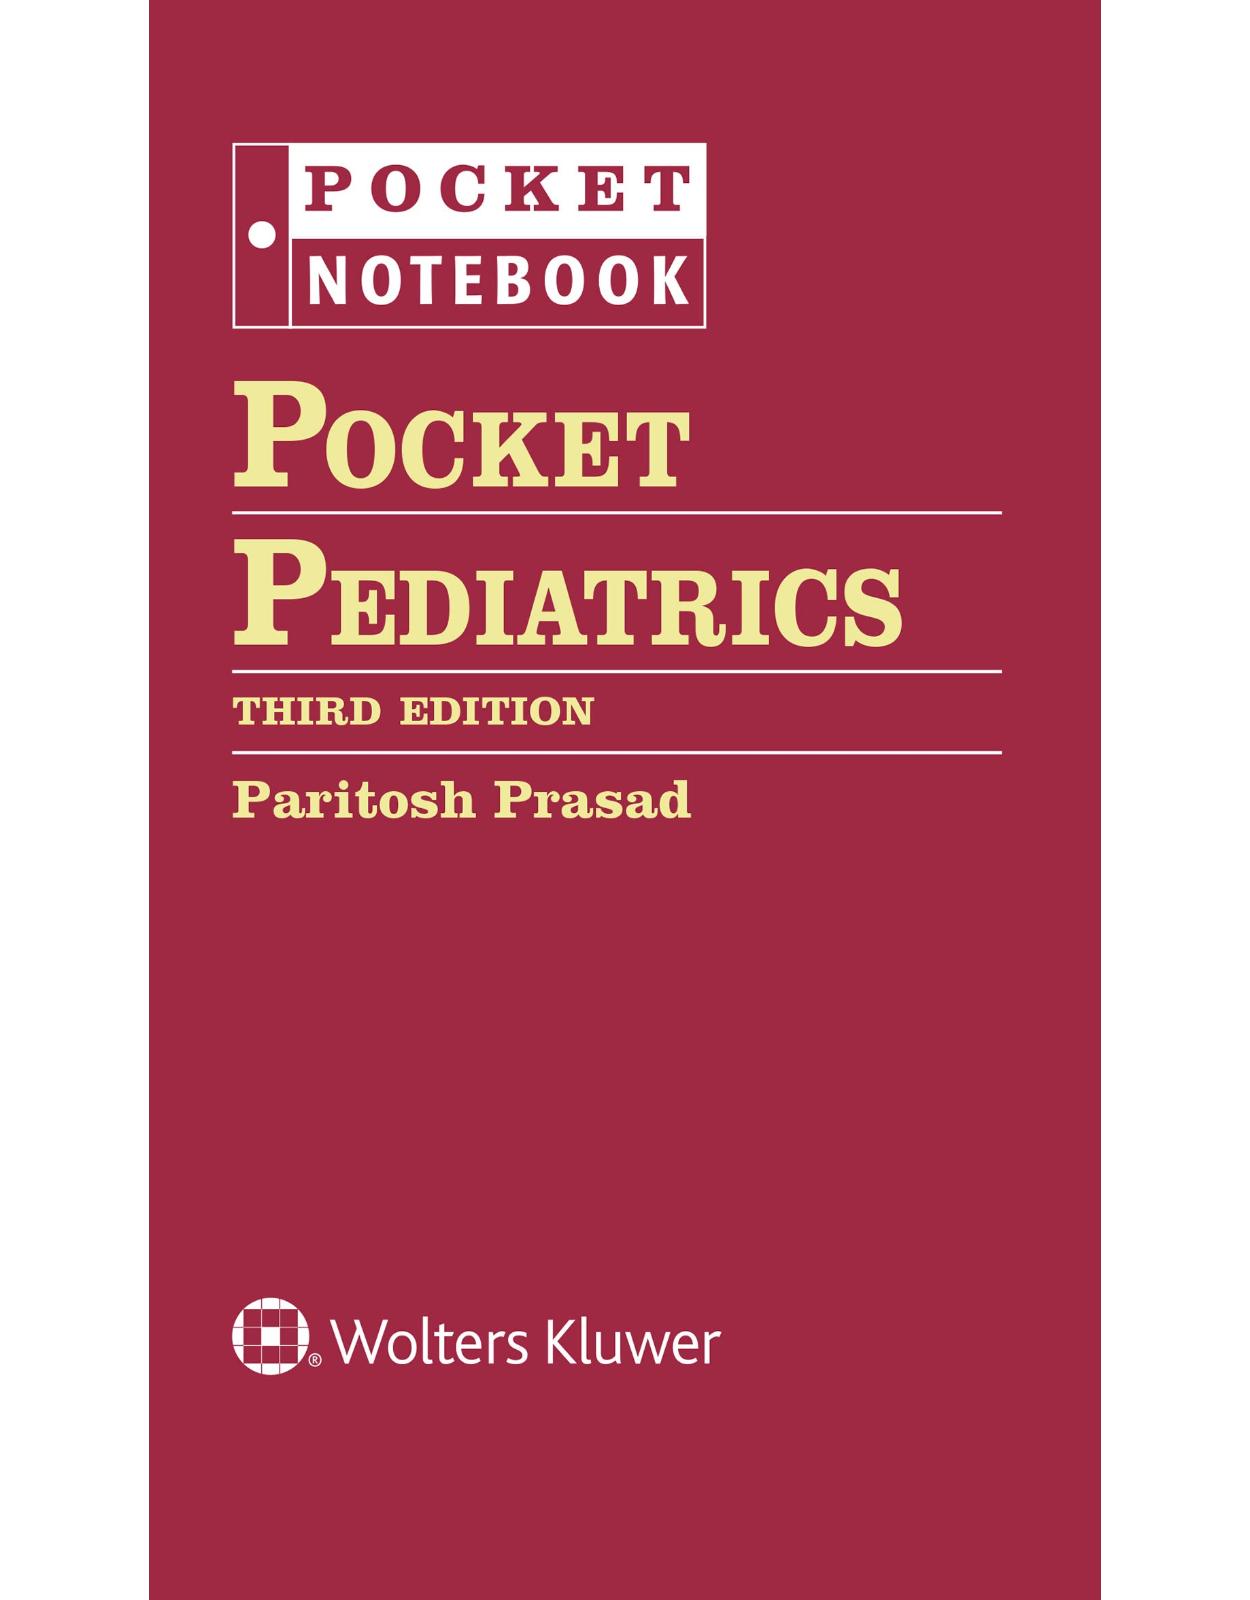 Pocket Pediatrics (Pocket Notebook) 